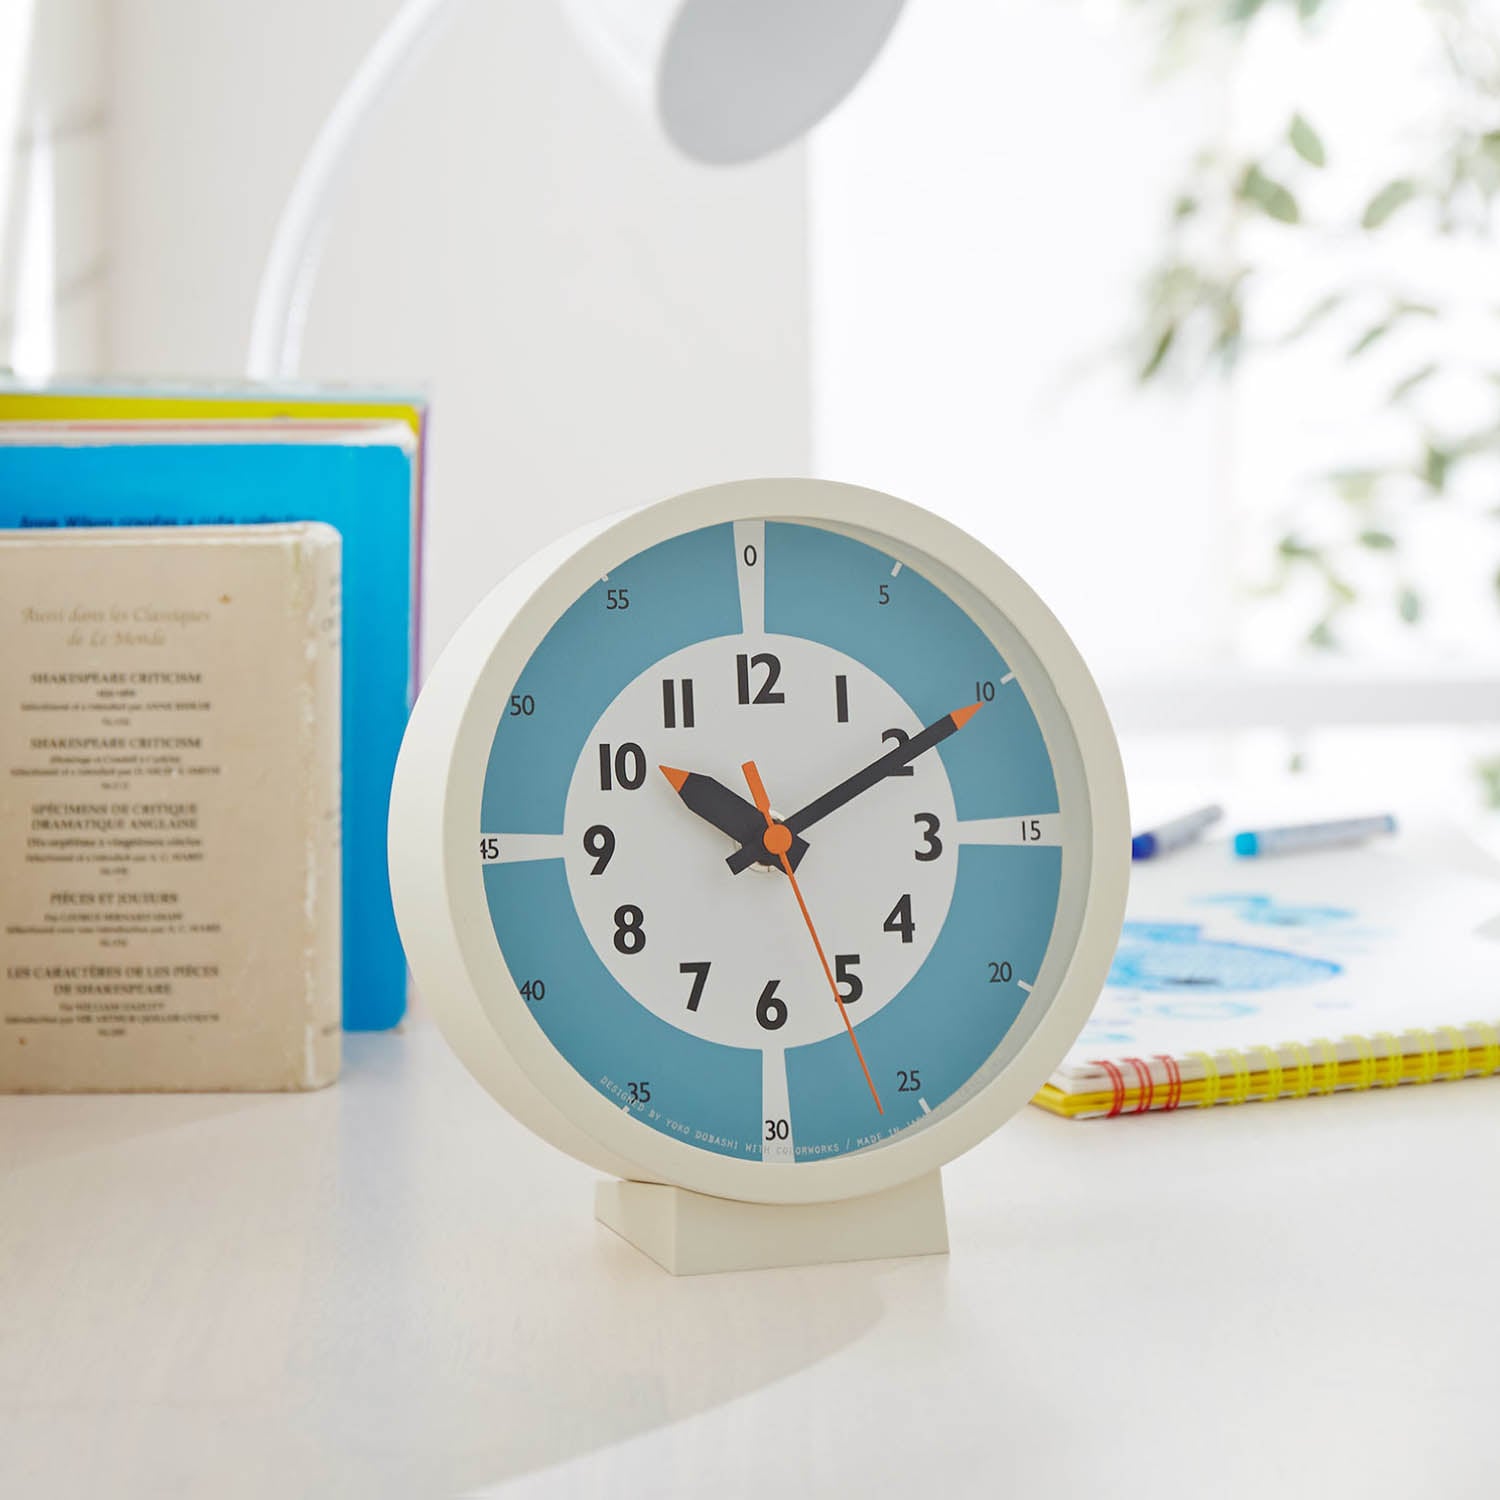 【レムノス/Lemnos】【子供部屋におすすめ】自分の時間をつくるのがうまくなる置き時計 フンプンクロック[日本製]画像